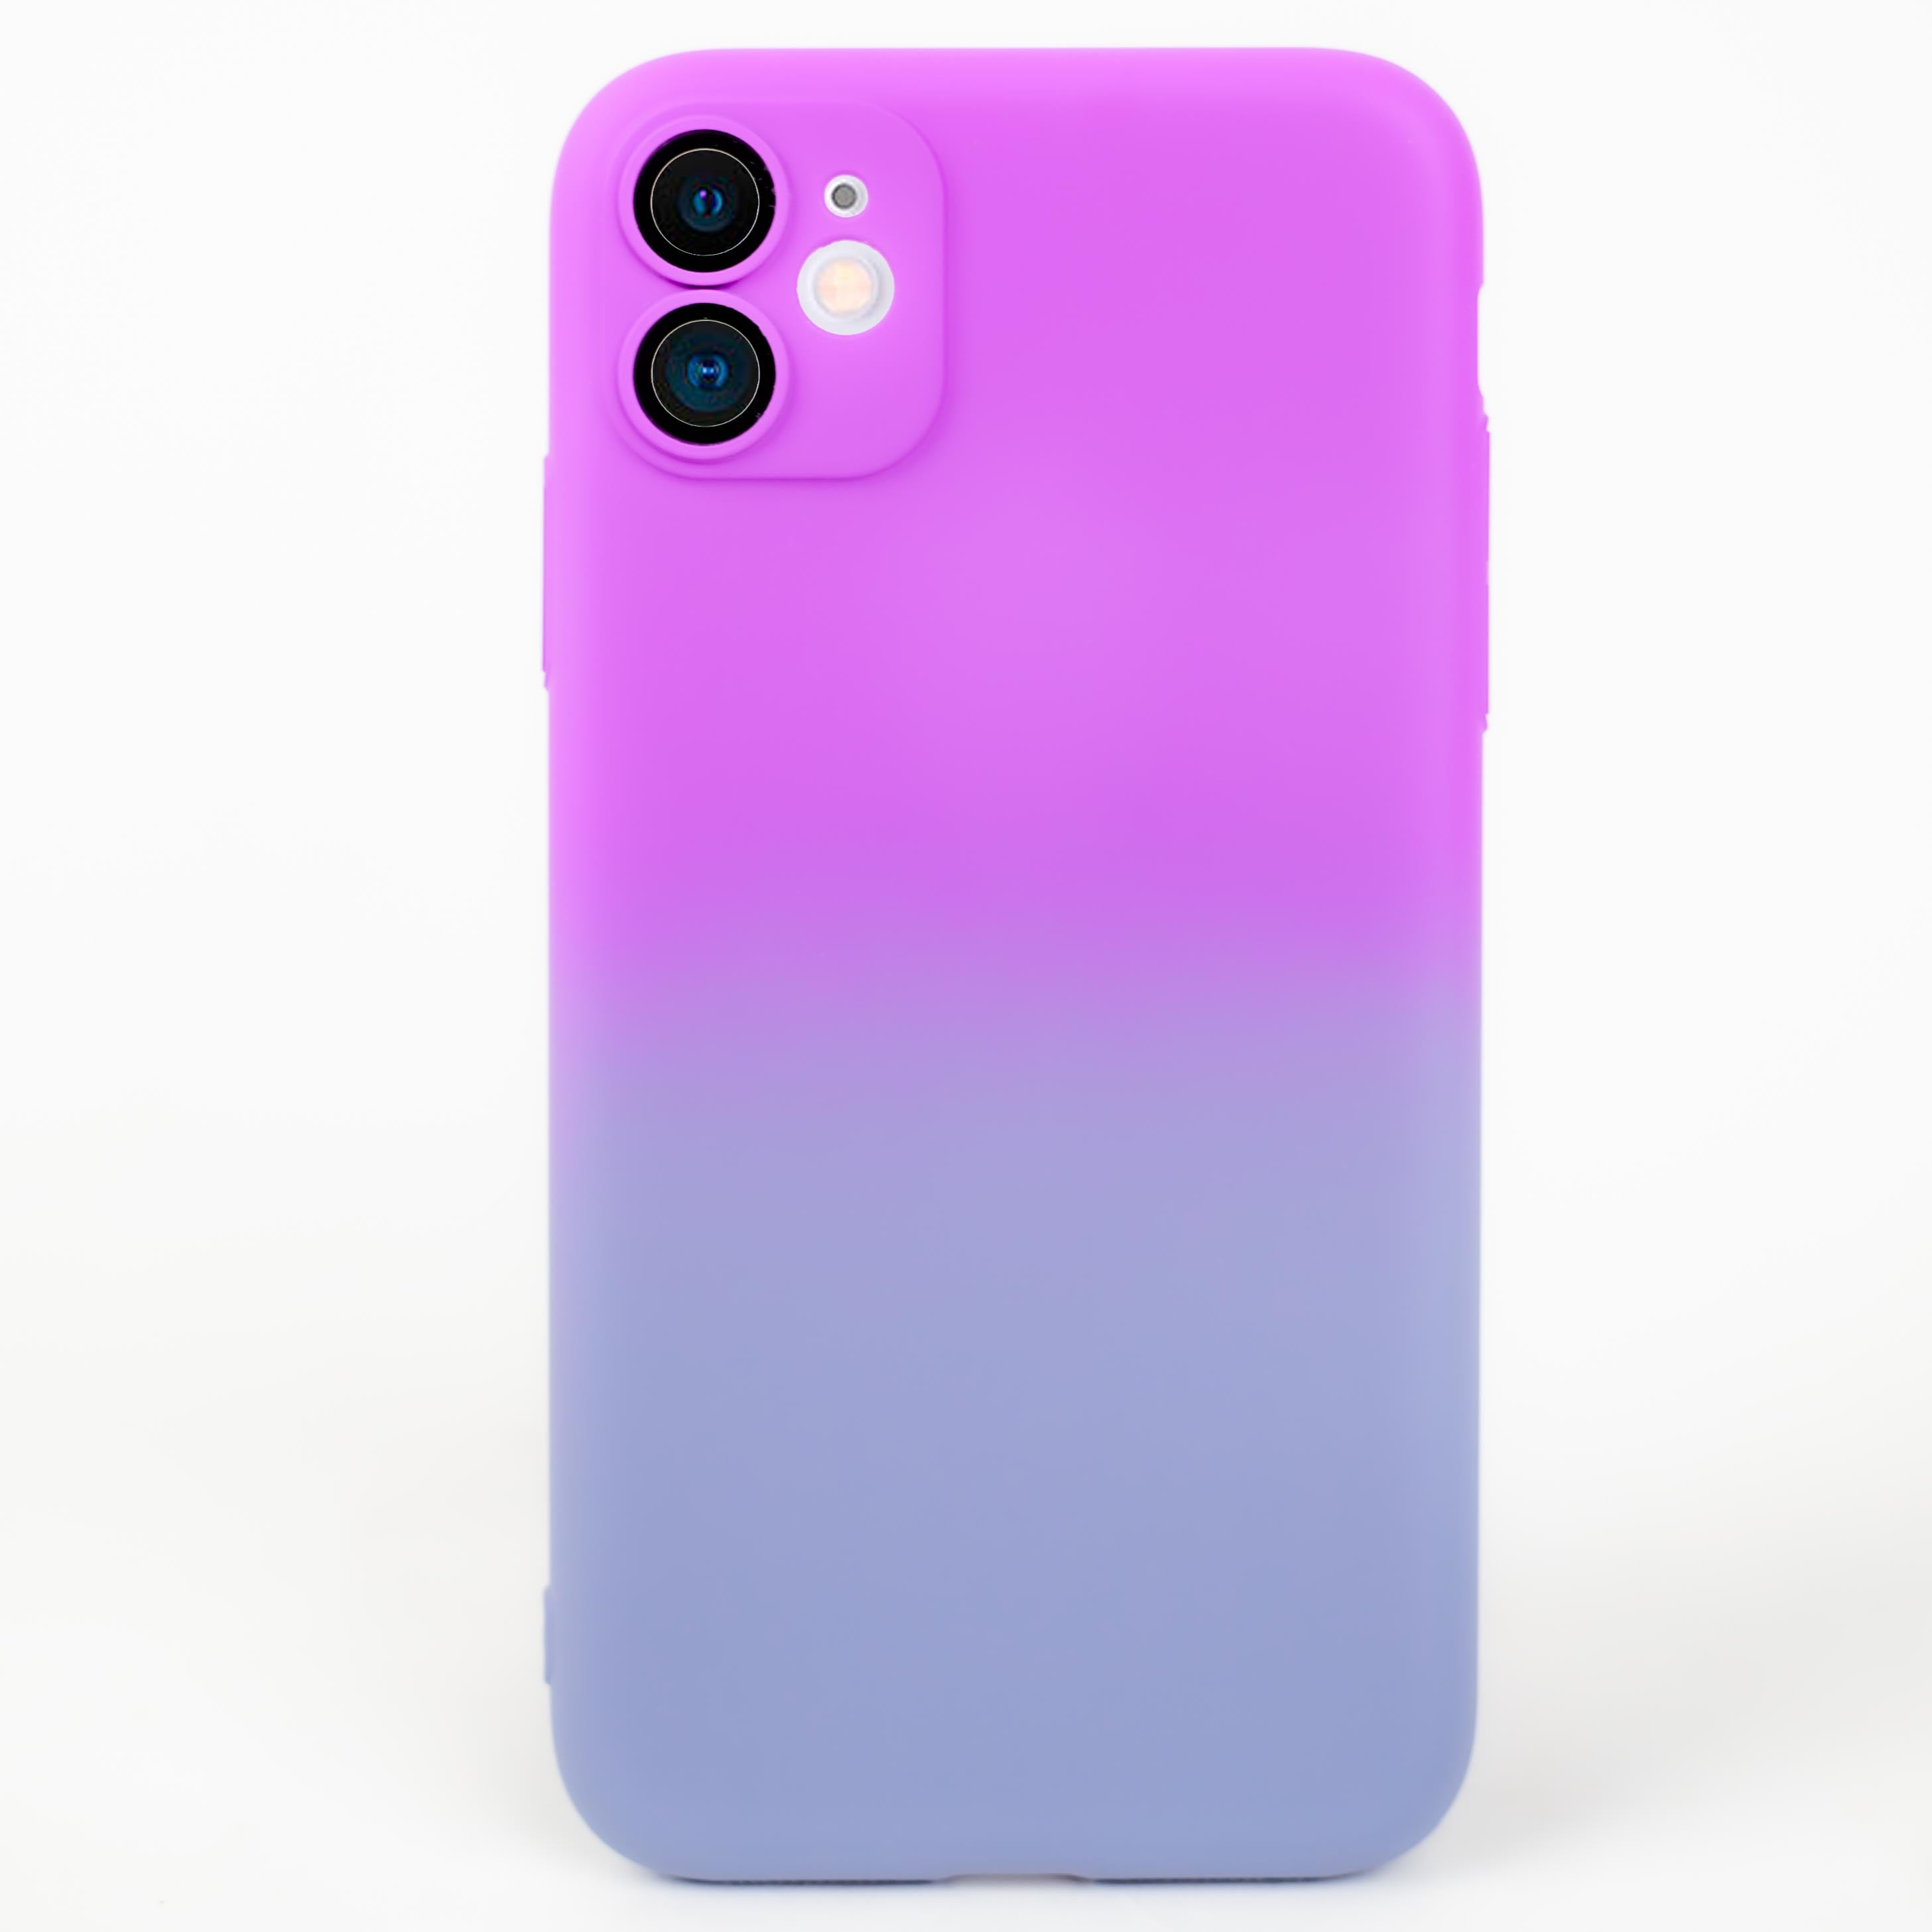 جراب بتصميم مميز بألوان مدمجه تضفي لمسة جمالية وأنيقة إلى هاتف iPhone 11